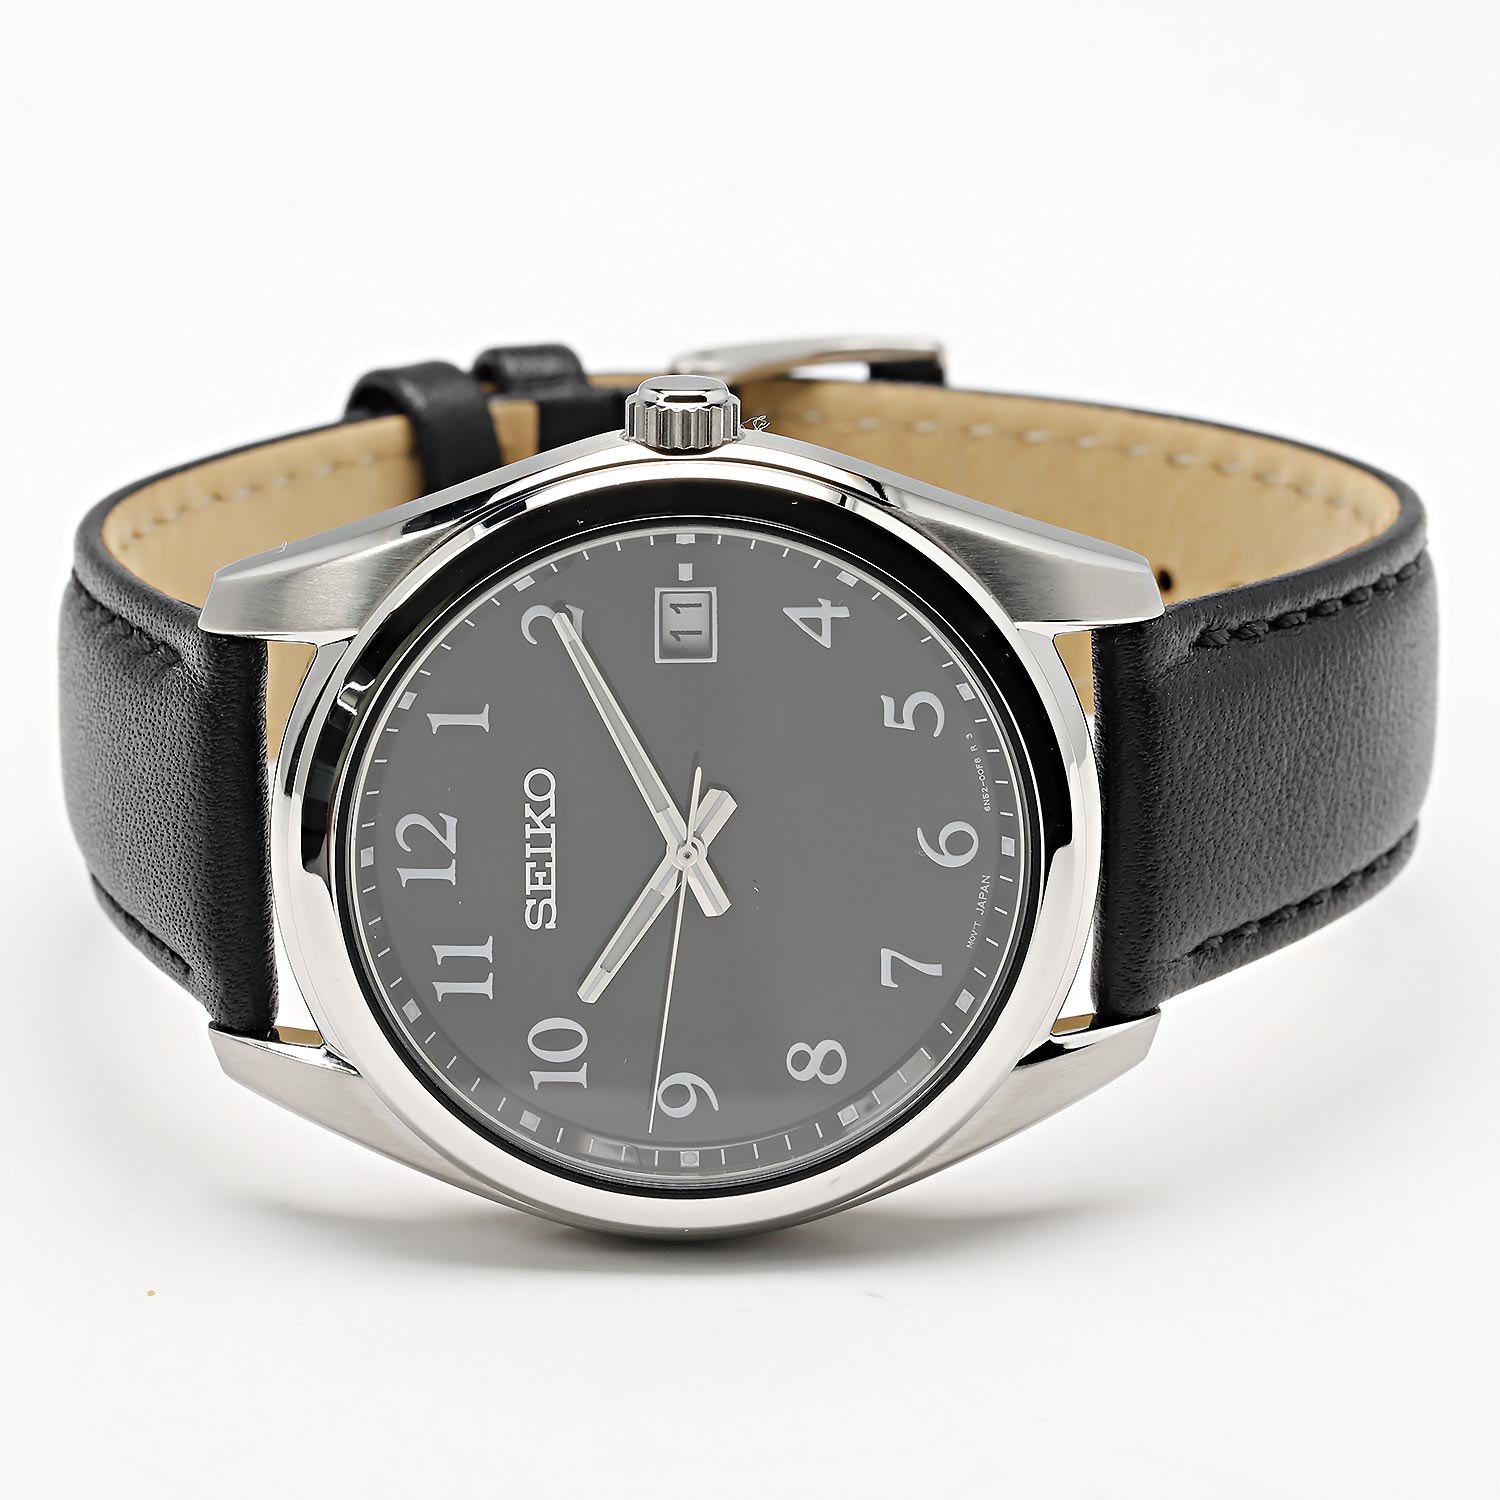 Наручные часы Seiko интернет-магазине купить AllTime.ru по в описание инструкция, — цене, фото, SUR461P1 характеристики, лучшей